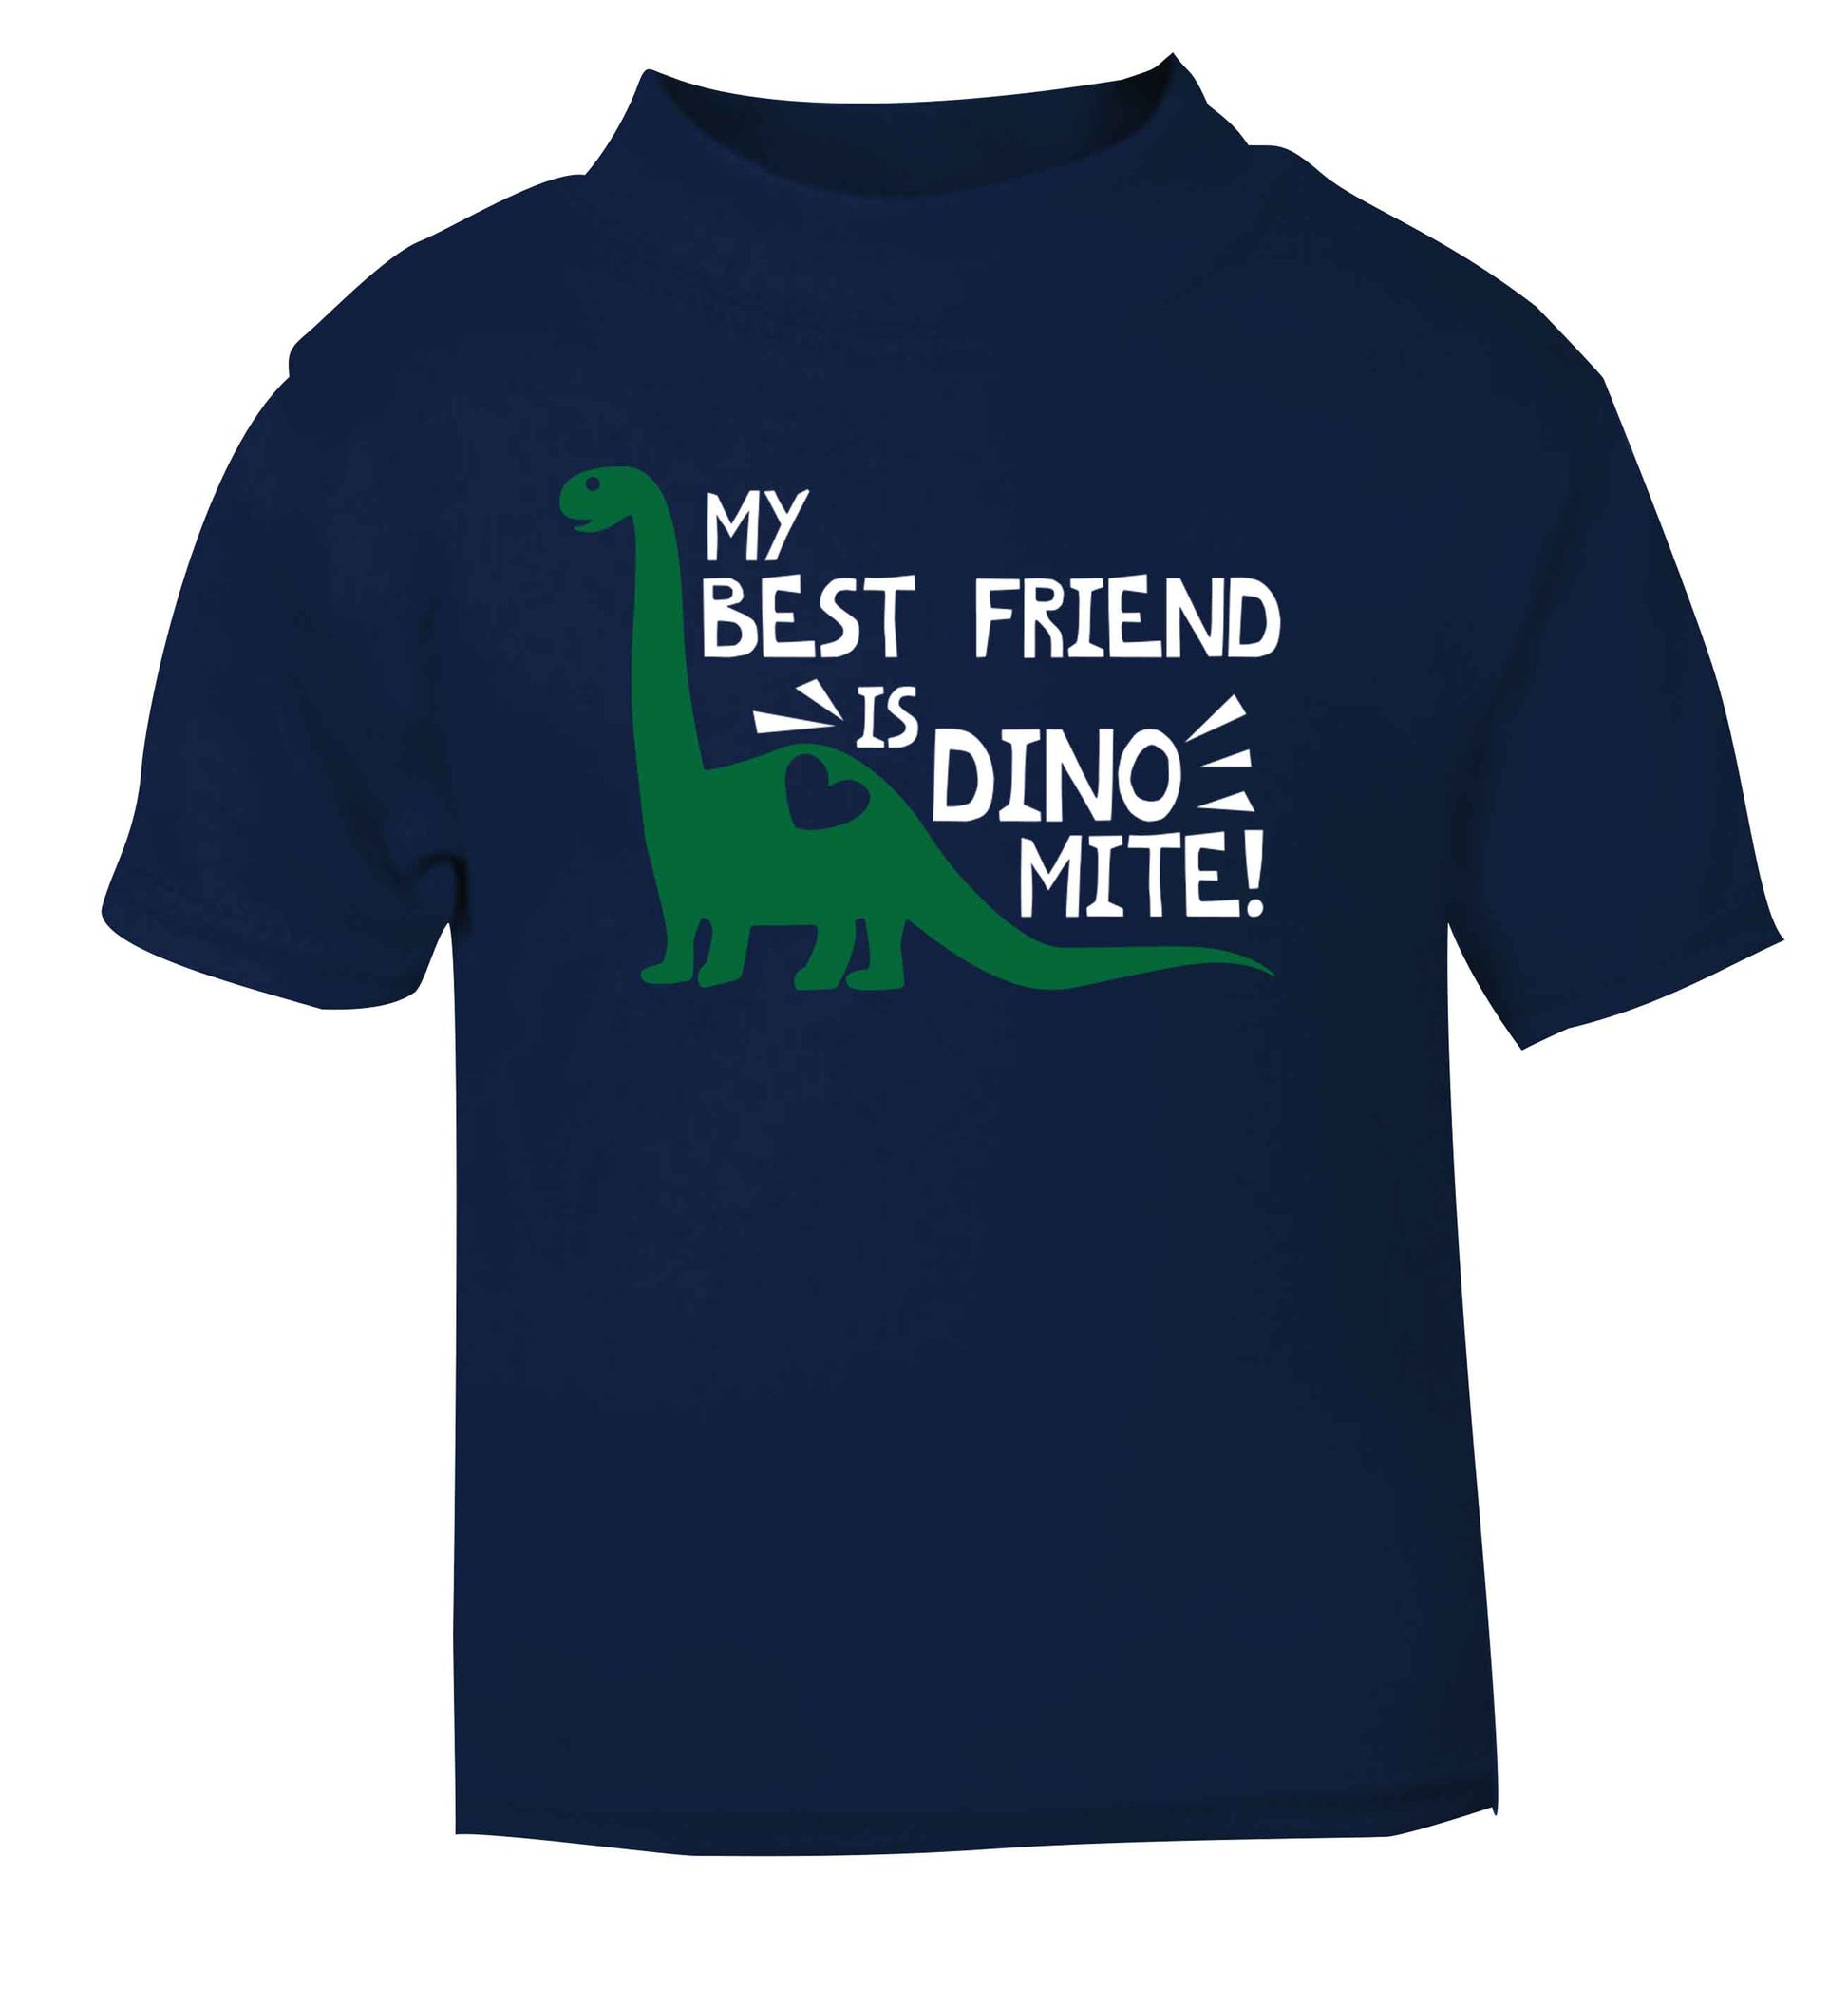 My best friend is dinomite! navy Baby Toddler Tshirt 2 Years